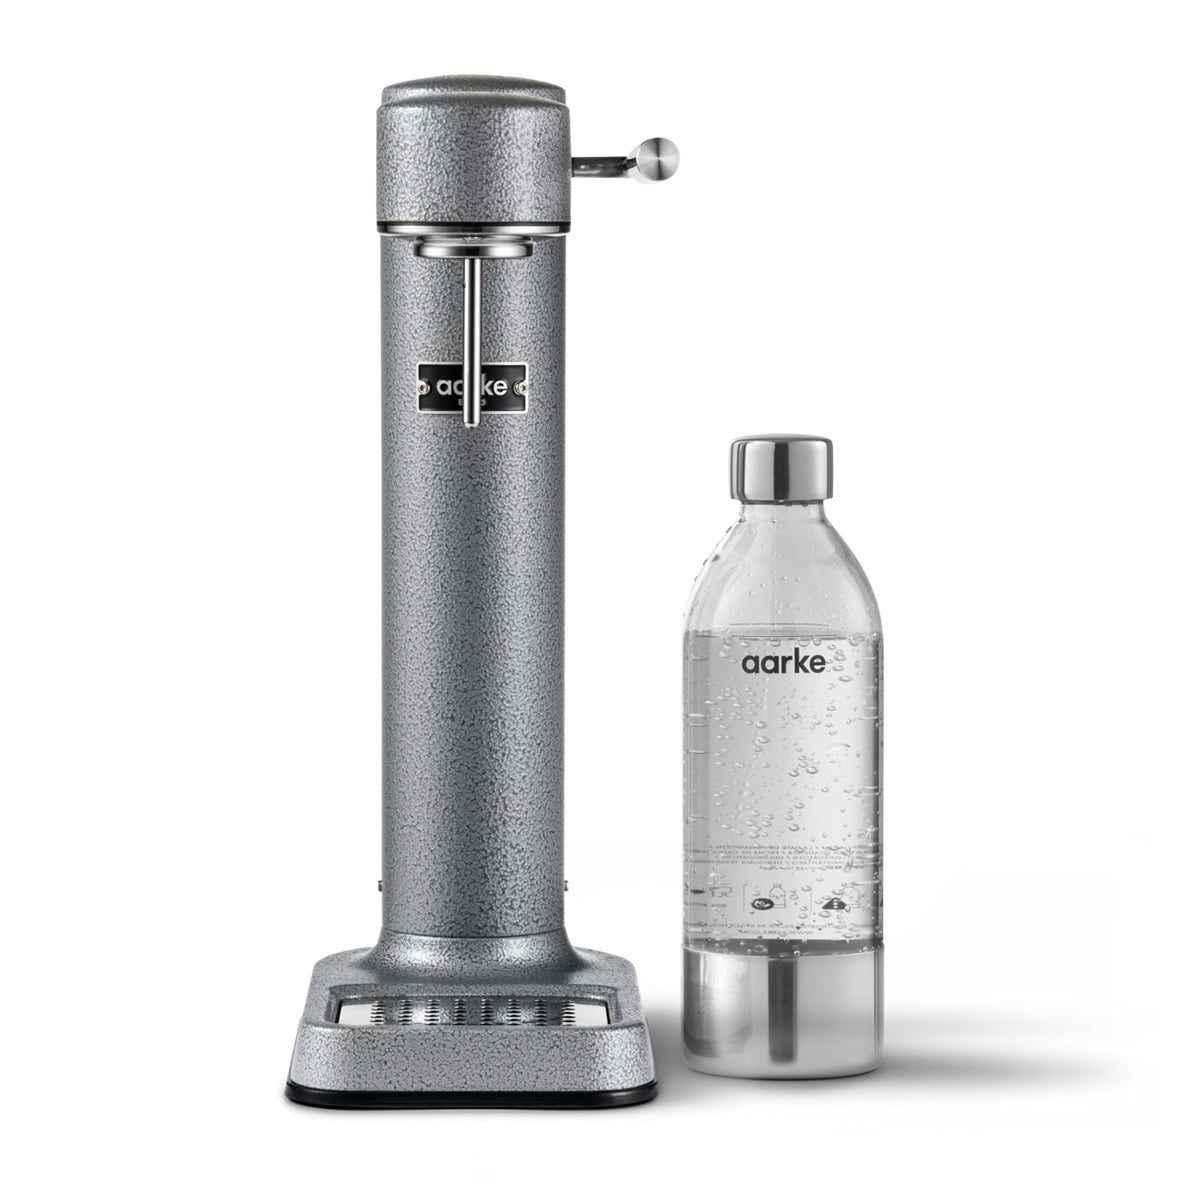 Aarke Carbonator 3 Sparkling Water Maker Limited Edition – Hammertone